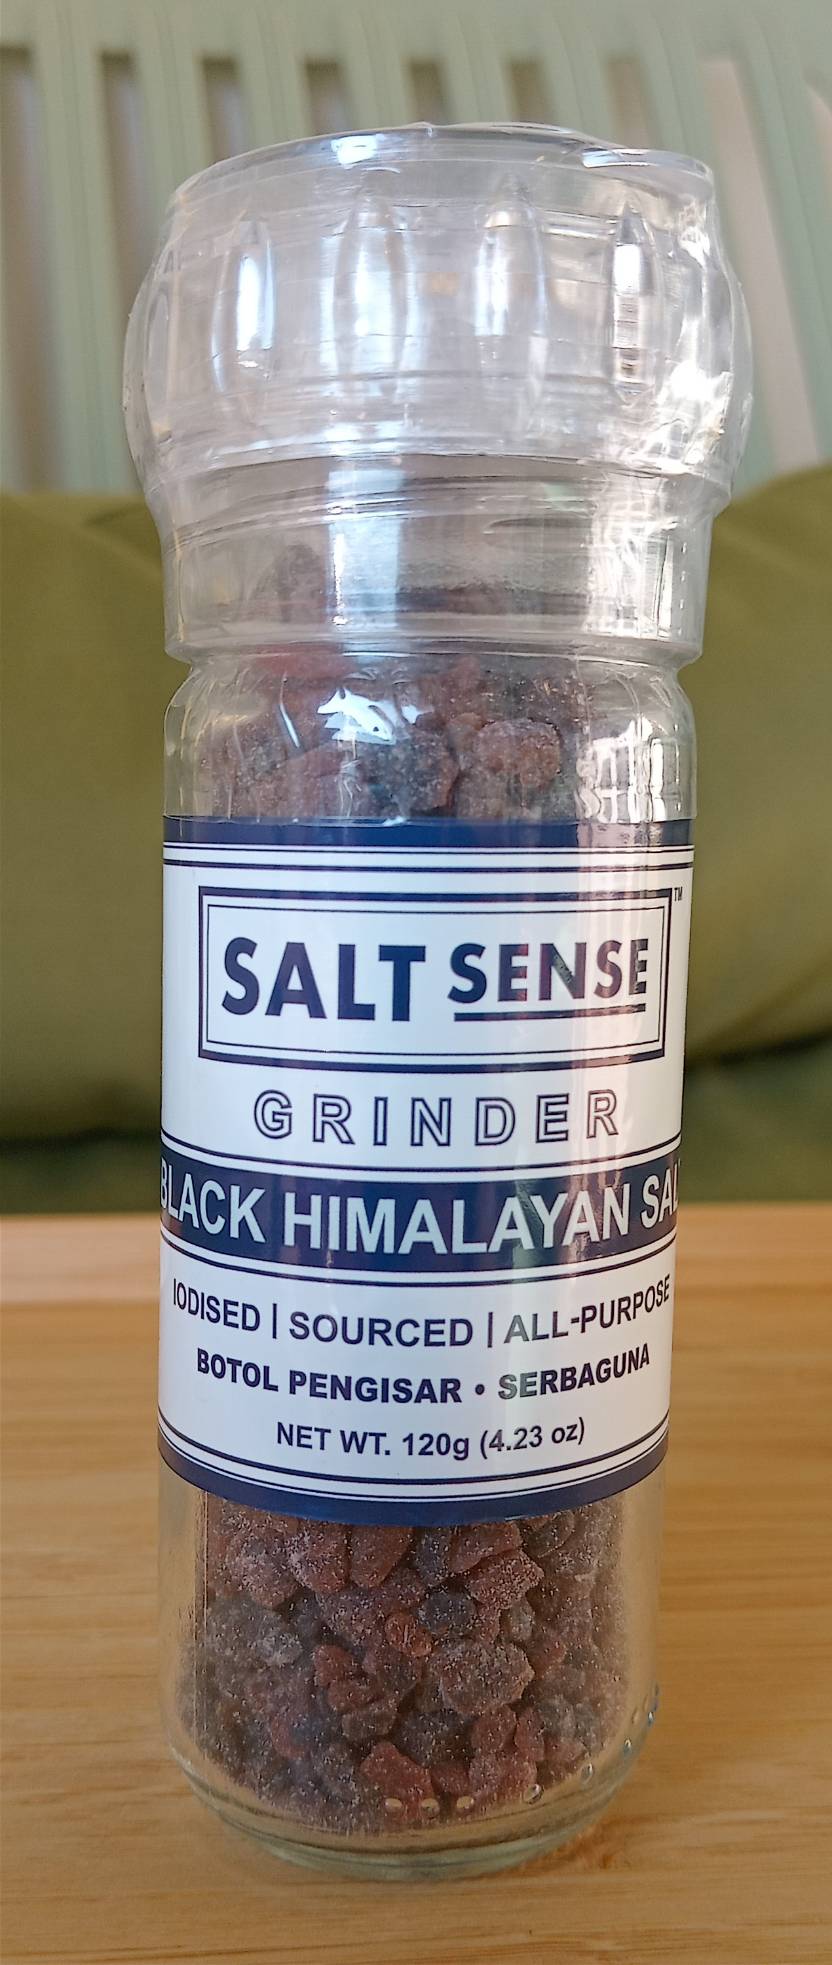 Black Himalayan Salt-Grunder-, Salt Sense 120g